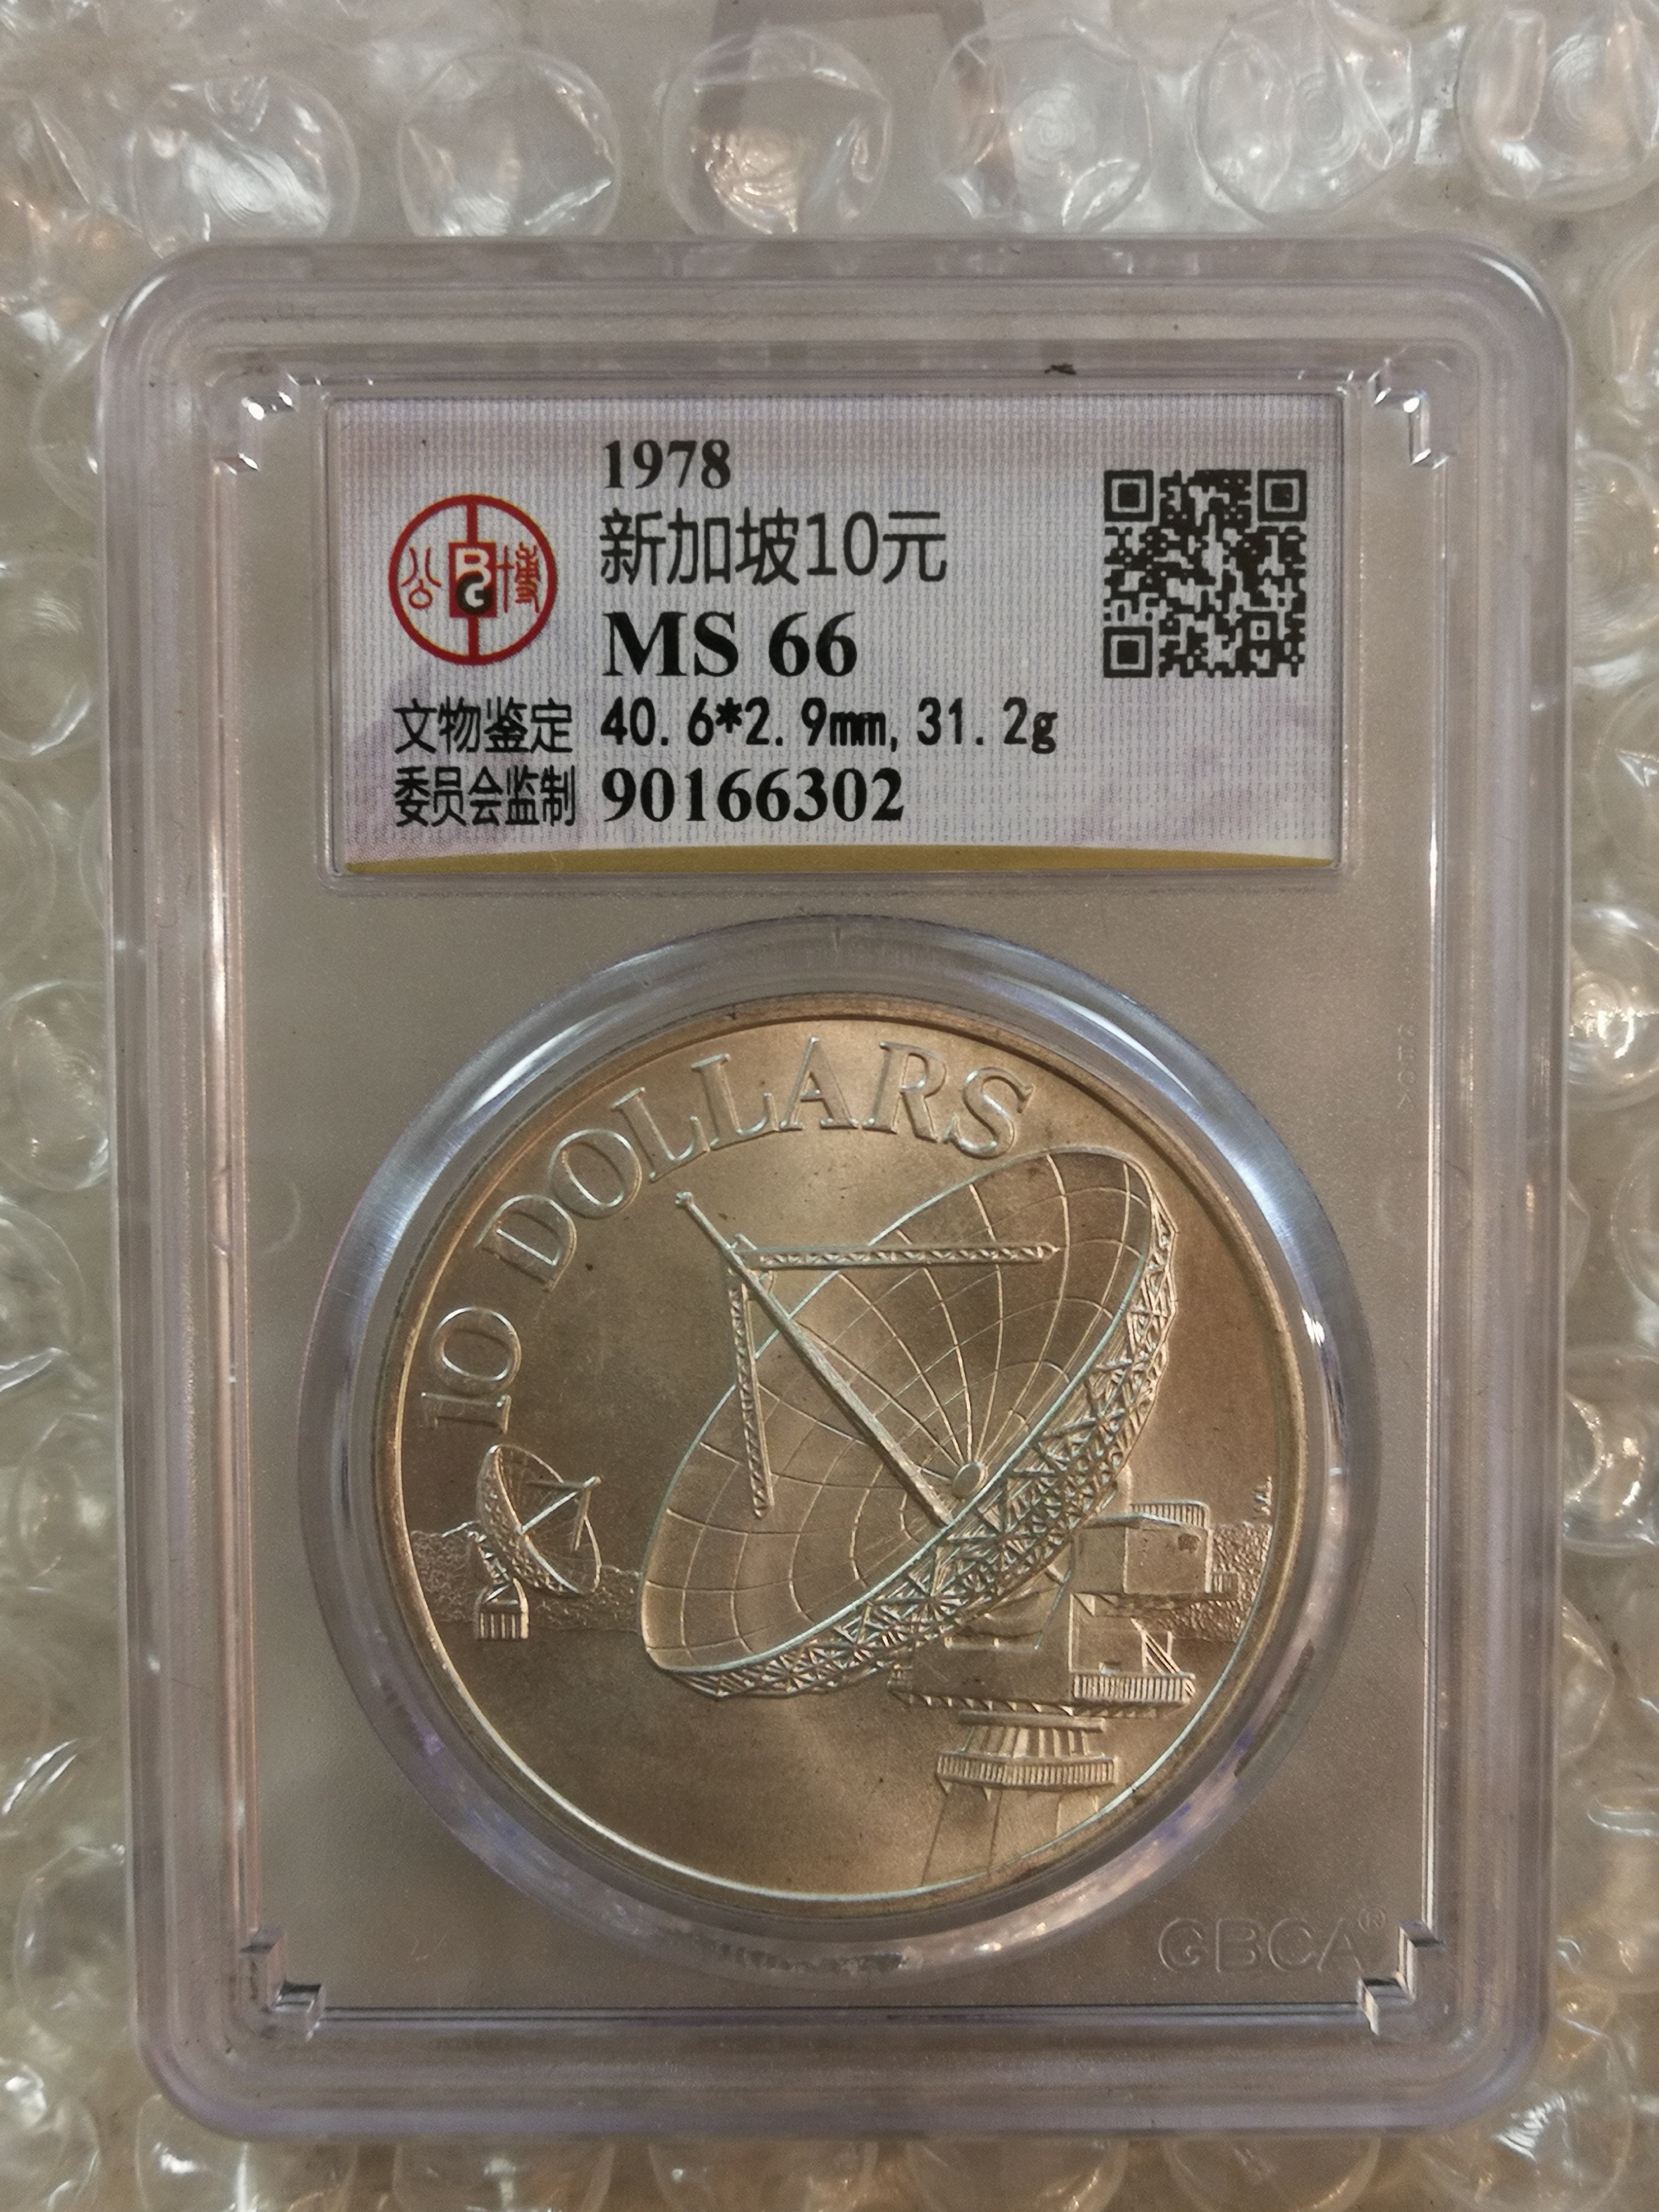 新加坡十元硬币图片图片